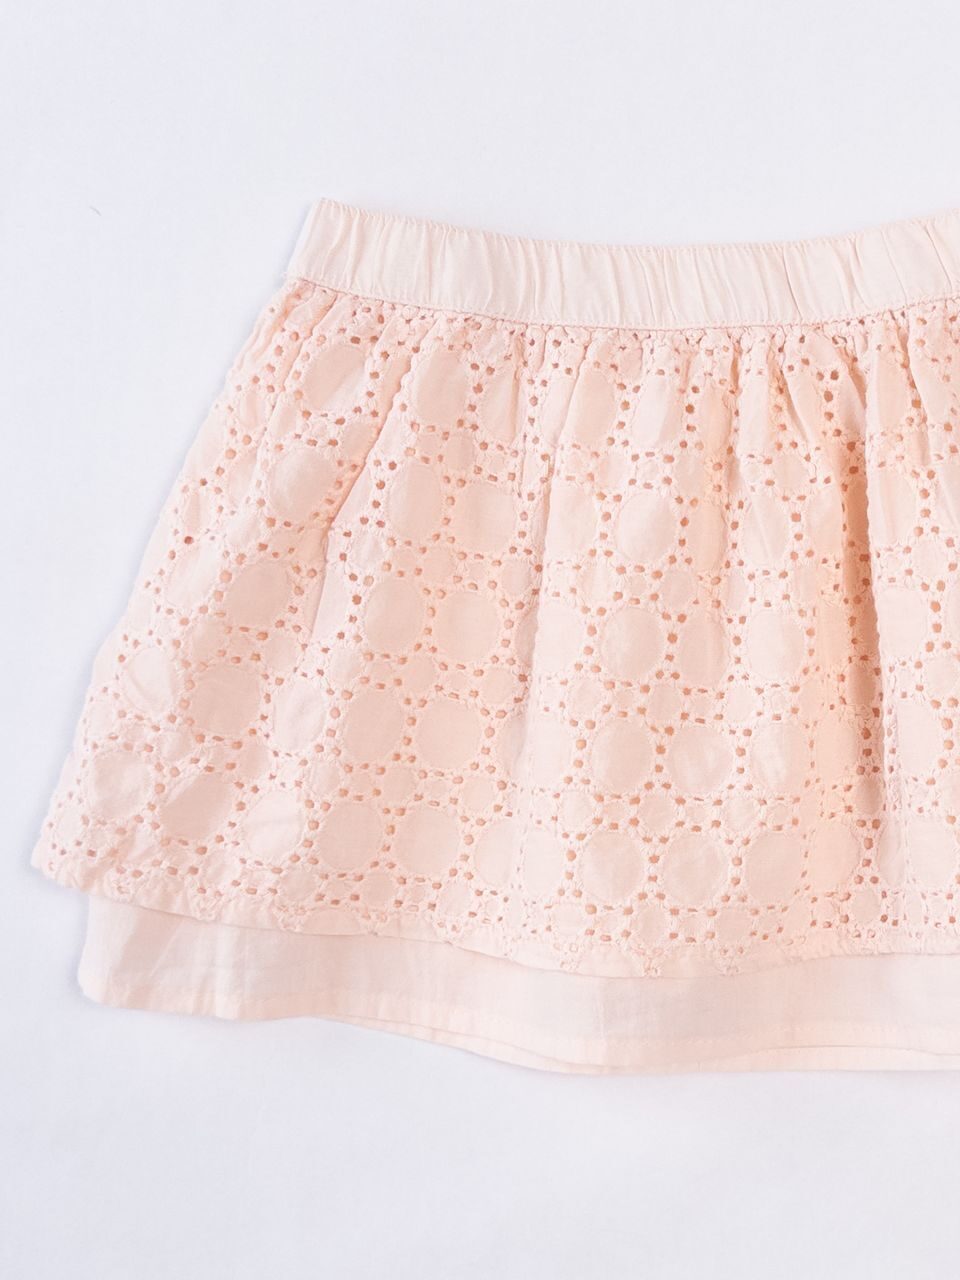 Юбка с английской вышивкой для девочки на хлопковой подкладке цвет светло-розовый рост 86-92 см RESERVED